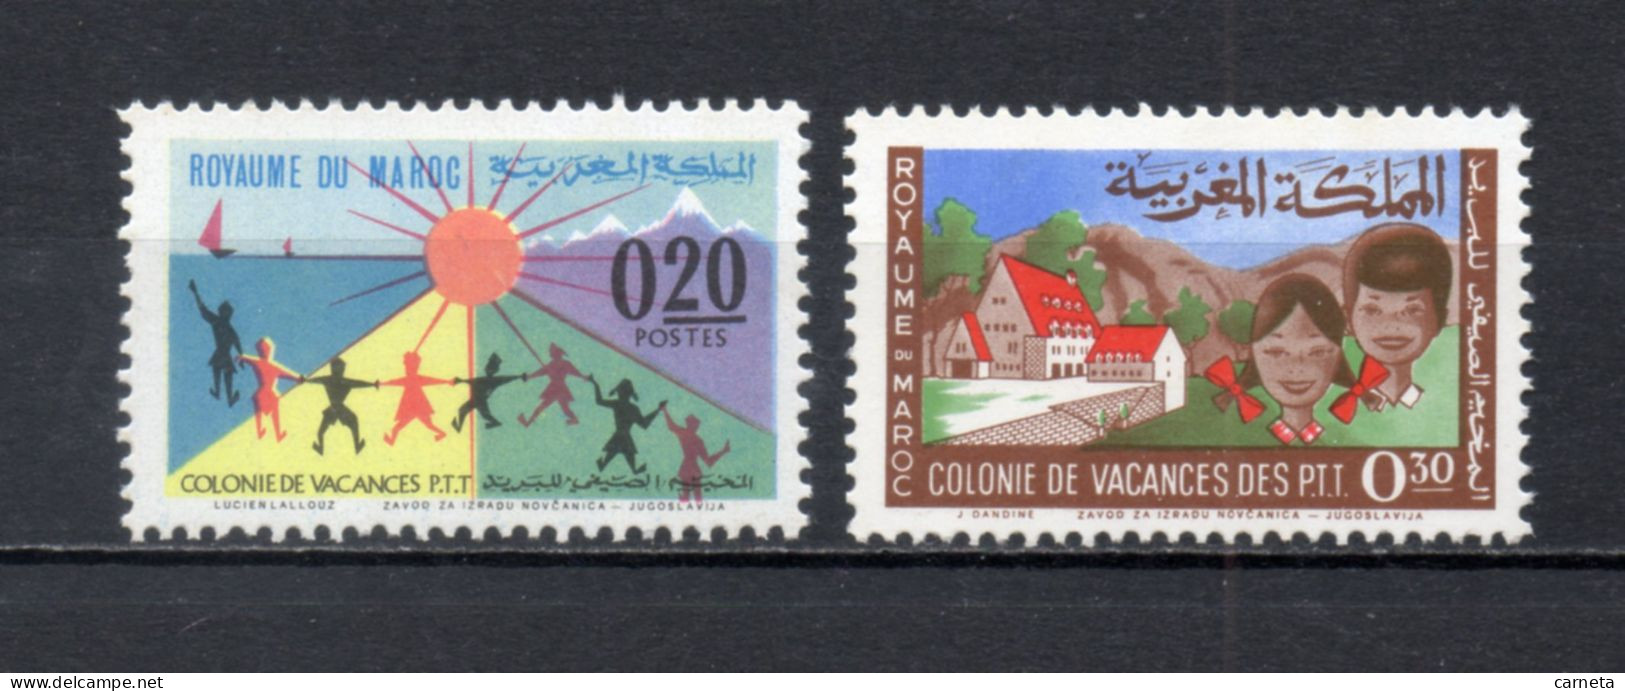 MAROC N°  474 + 475    NEUFS SANS CHARNIERE  COTE 1.80€   COLONIE DE VACANCES DES PTT - Morocco (1956-...)